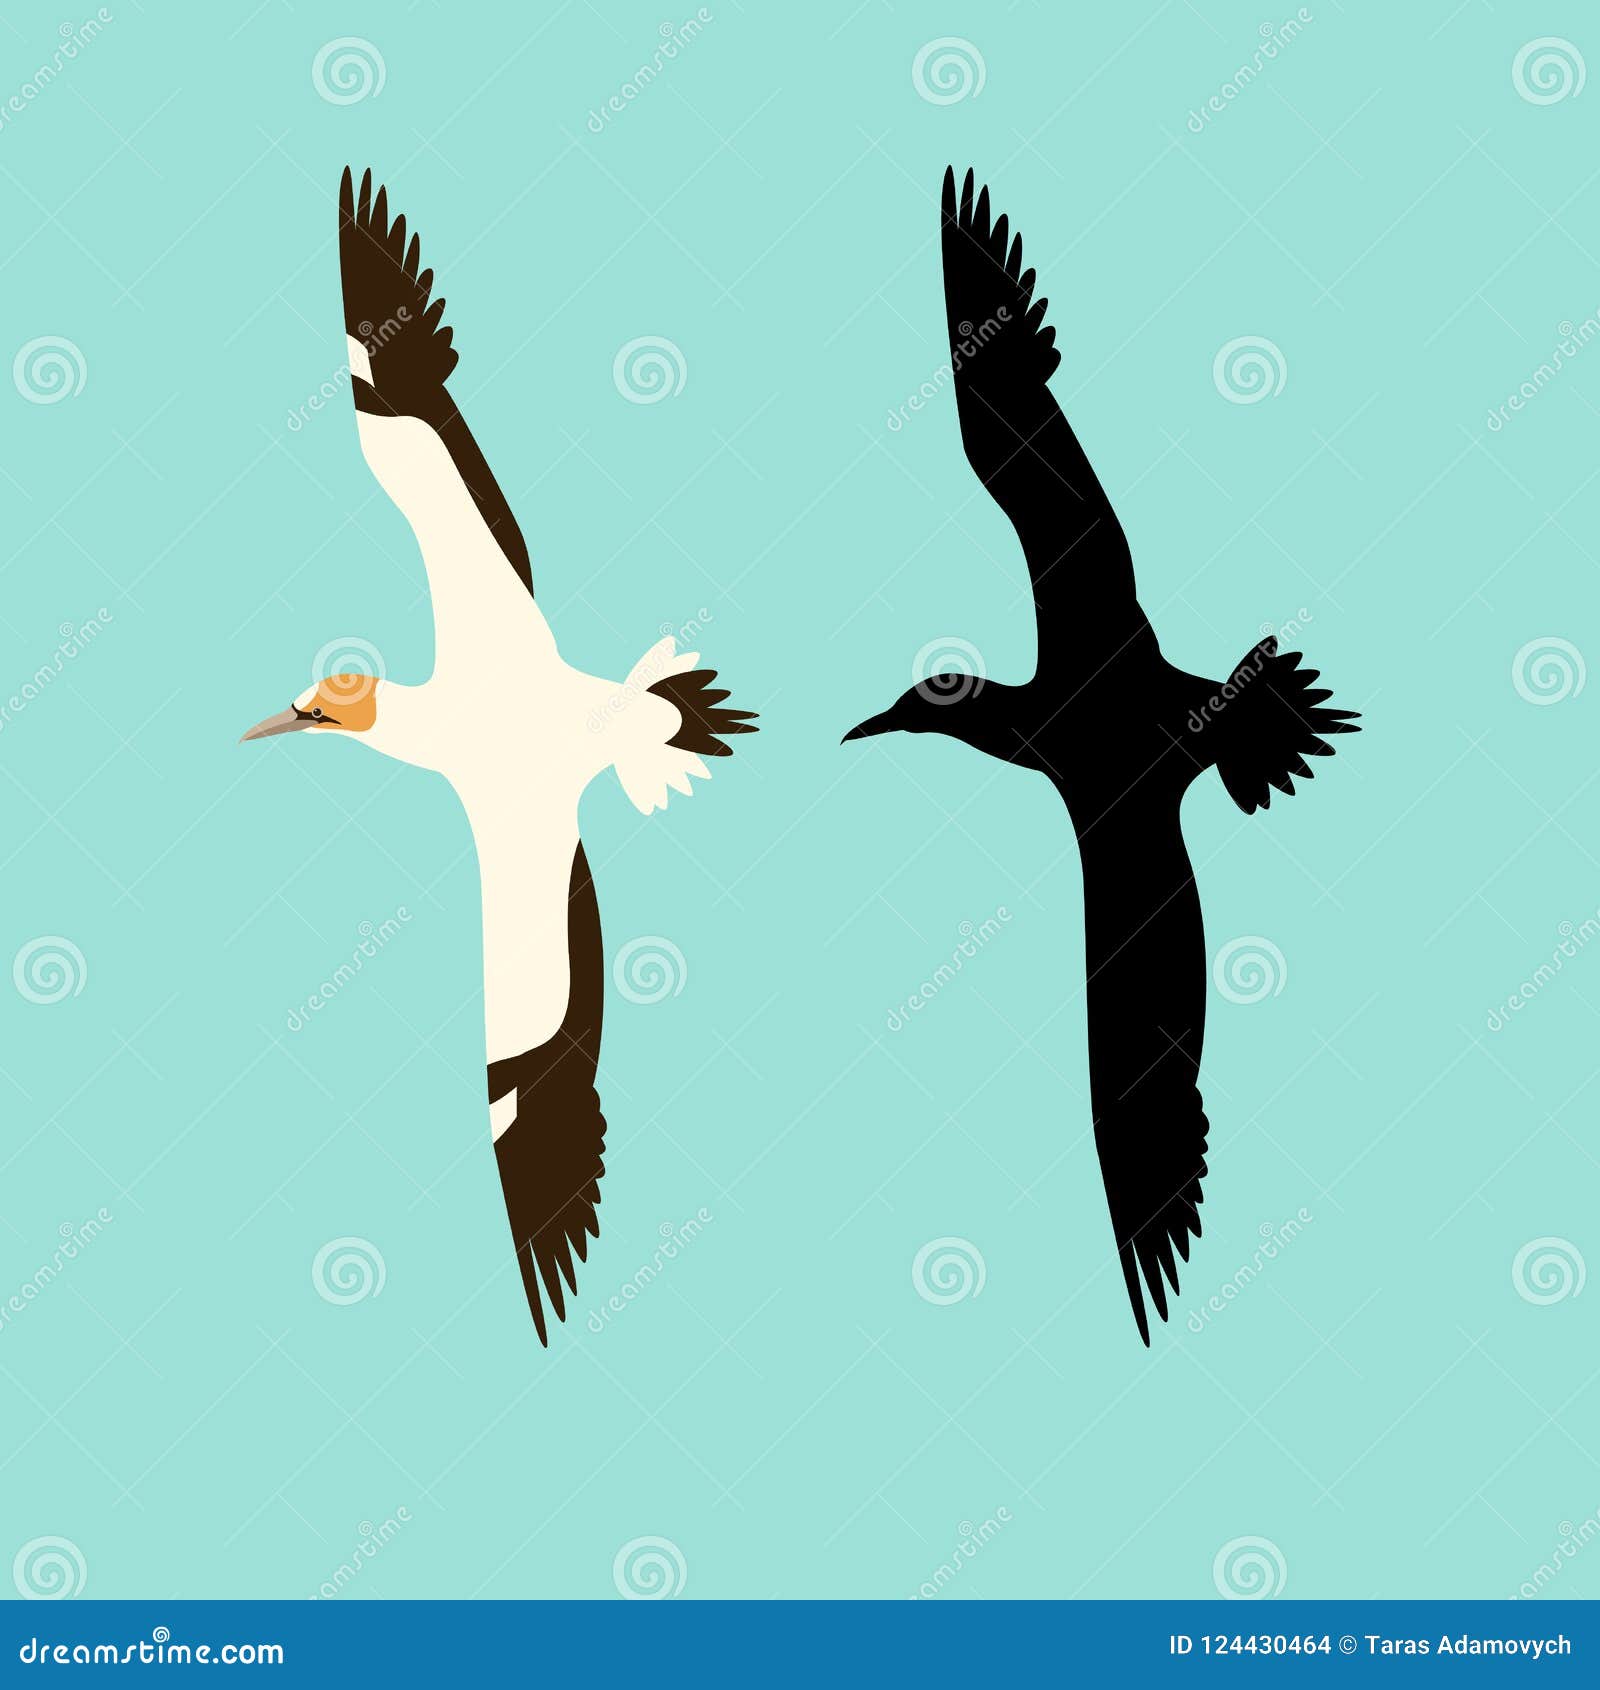 northern gannet bird   flat style silhouette